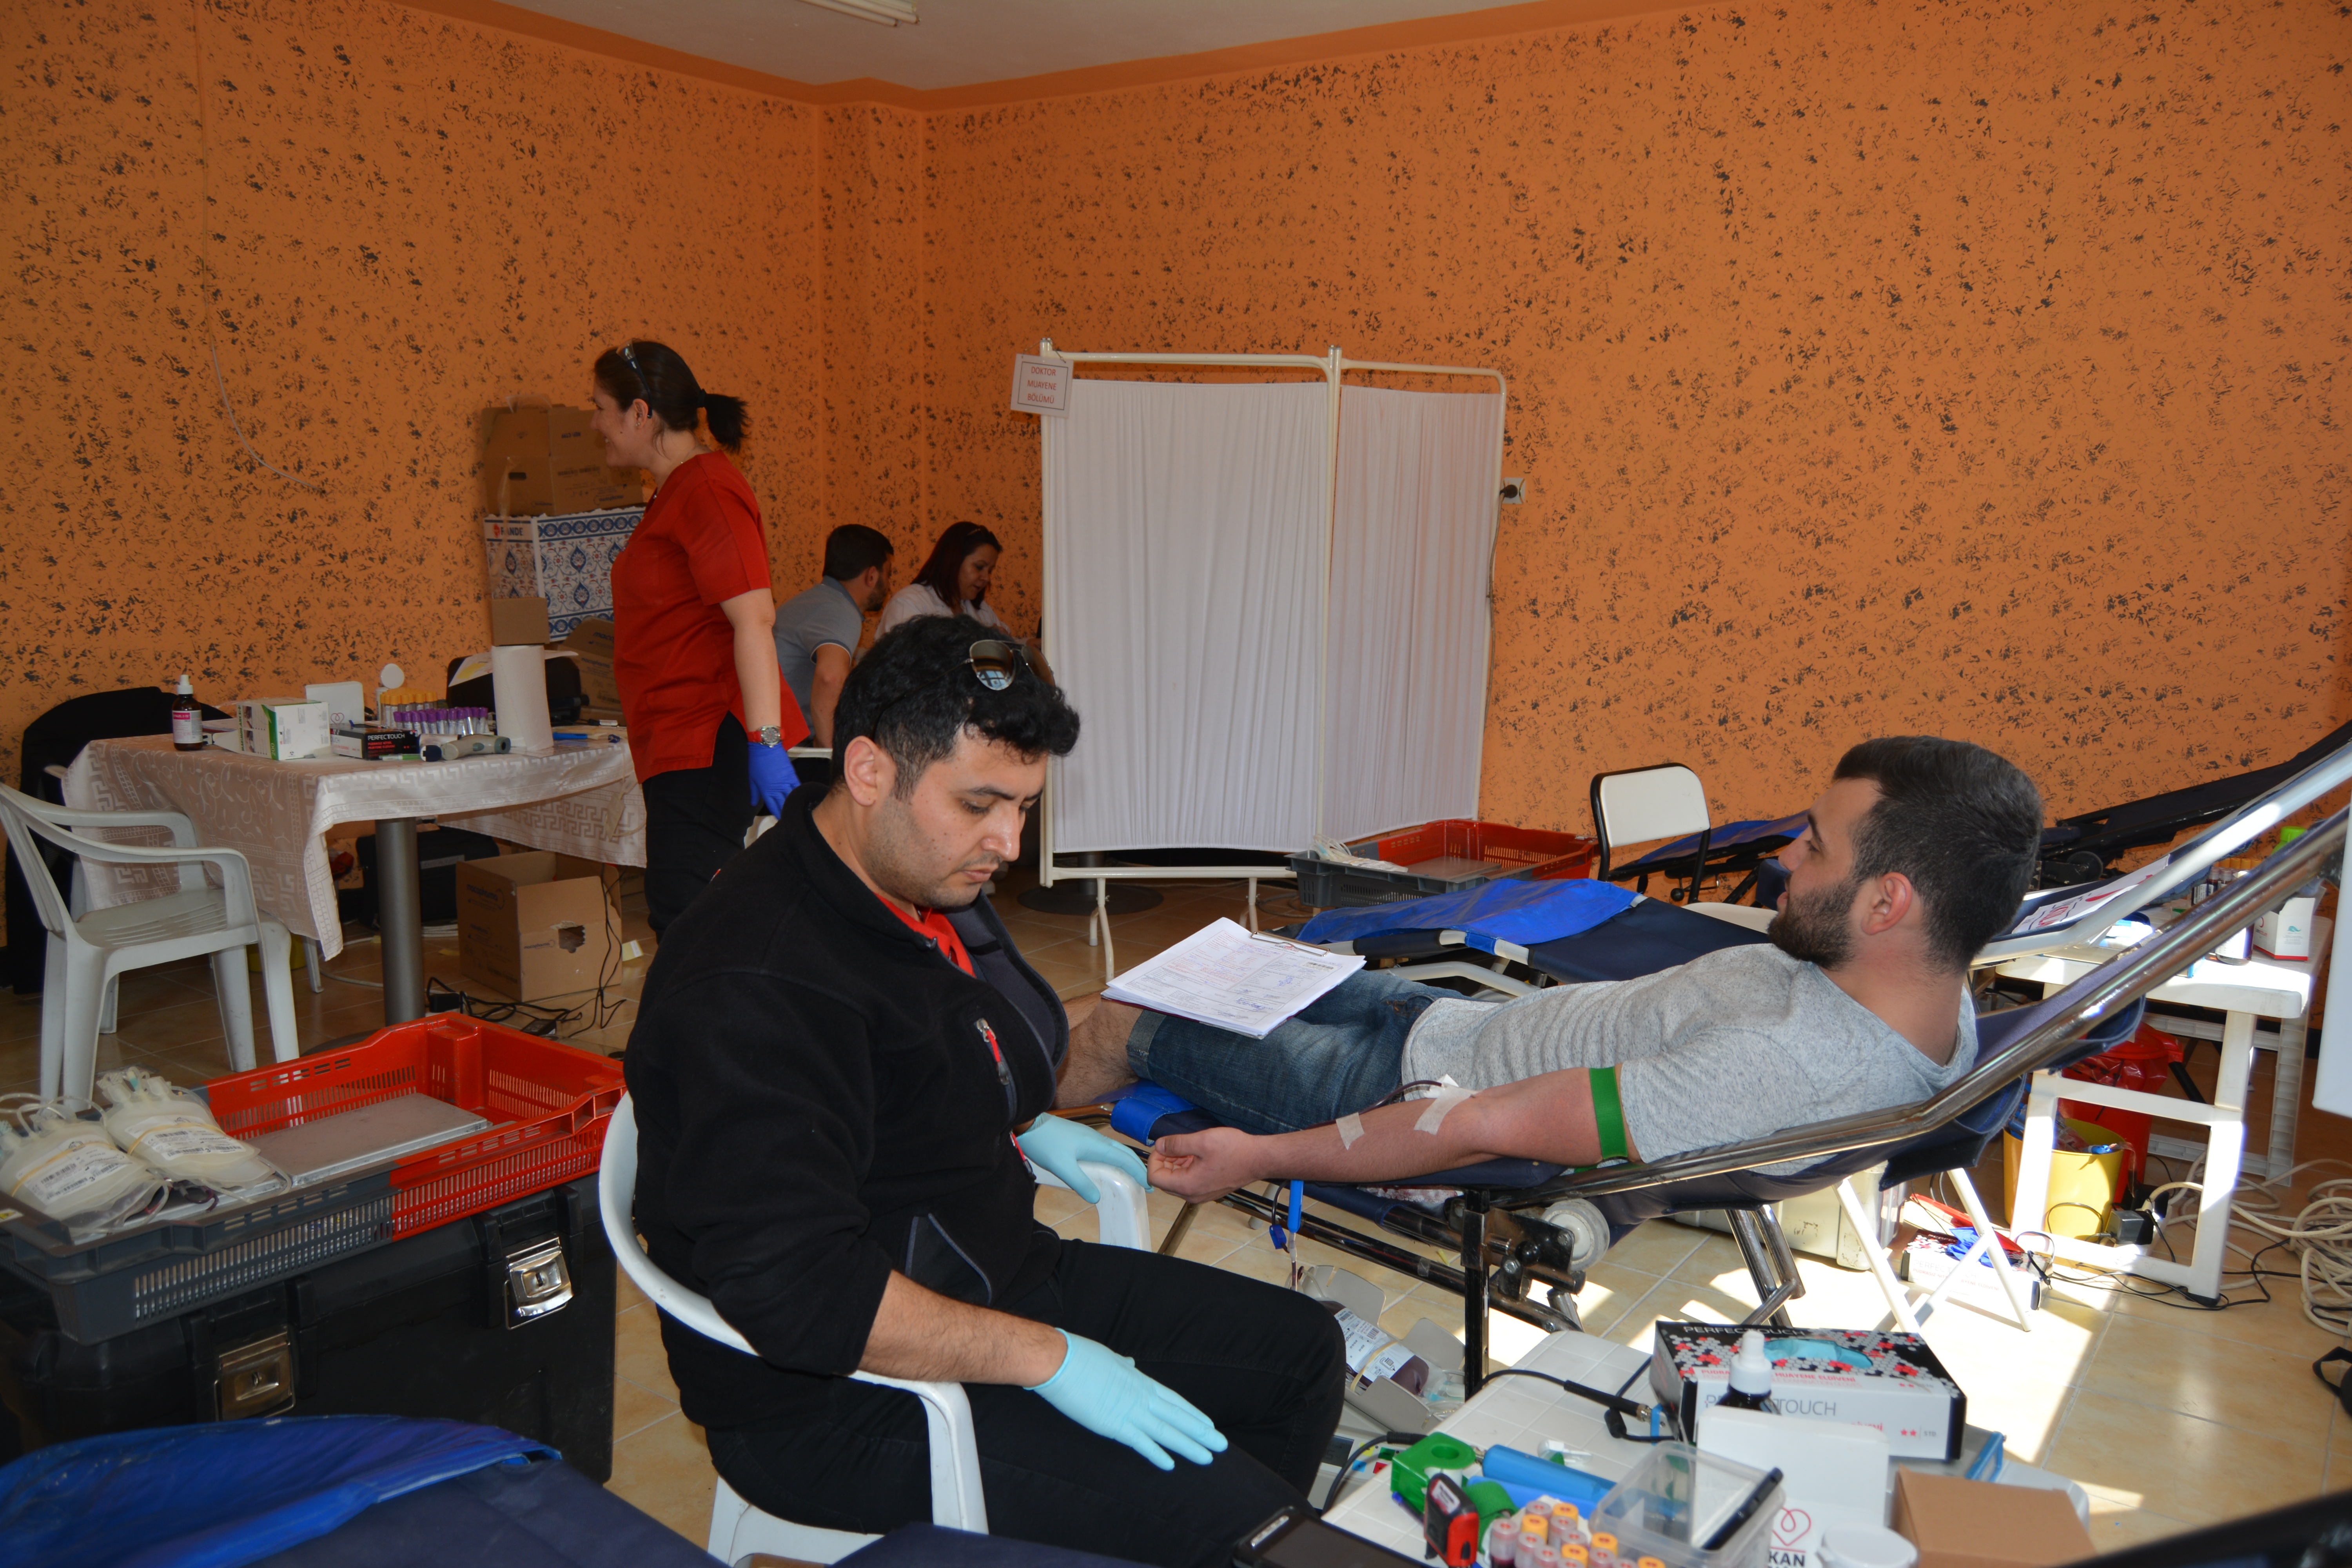  Meslek Yüksekokulumuz, öğrenciler ve personel ile birlikte Kızılay'a kan bağışı yapmıştır. 